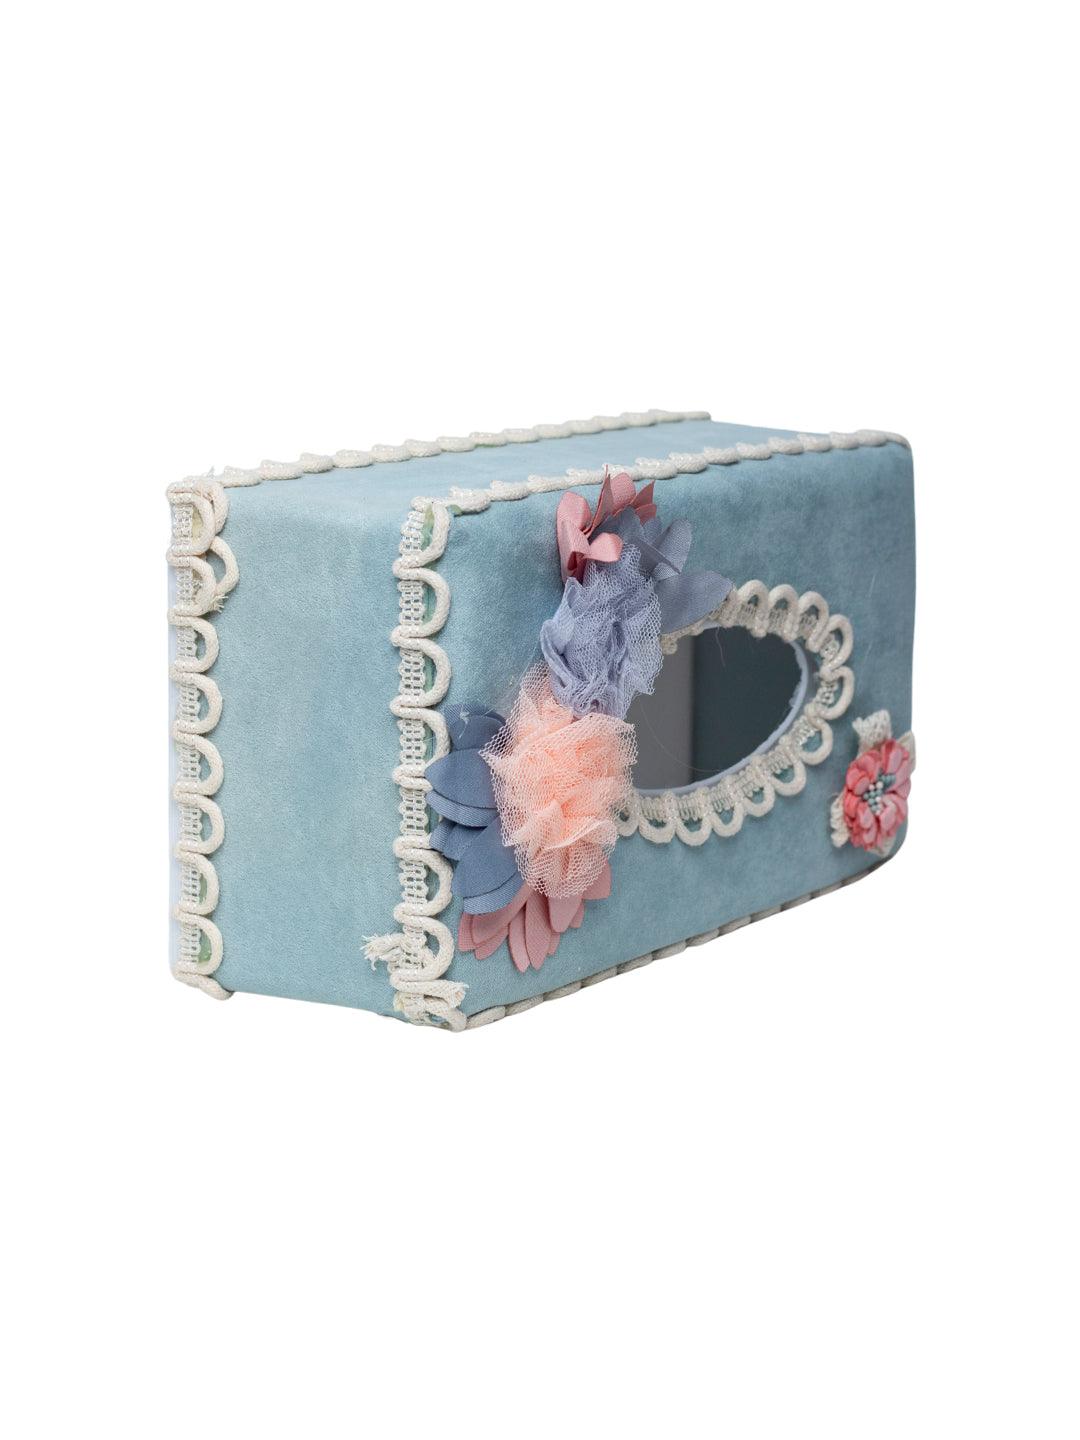 Middle Blue Tissue Box Holder - Floral Design - MARKET 99